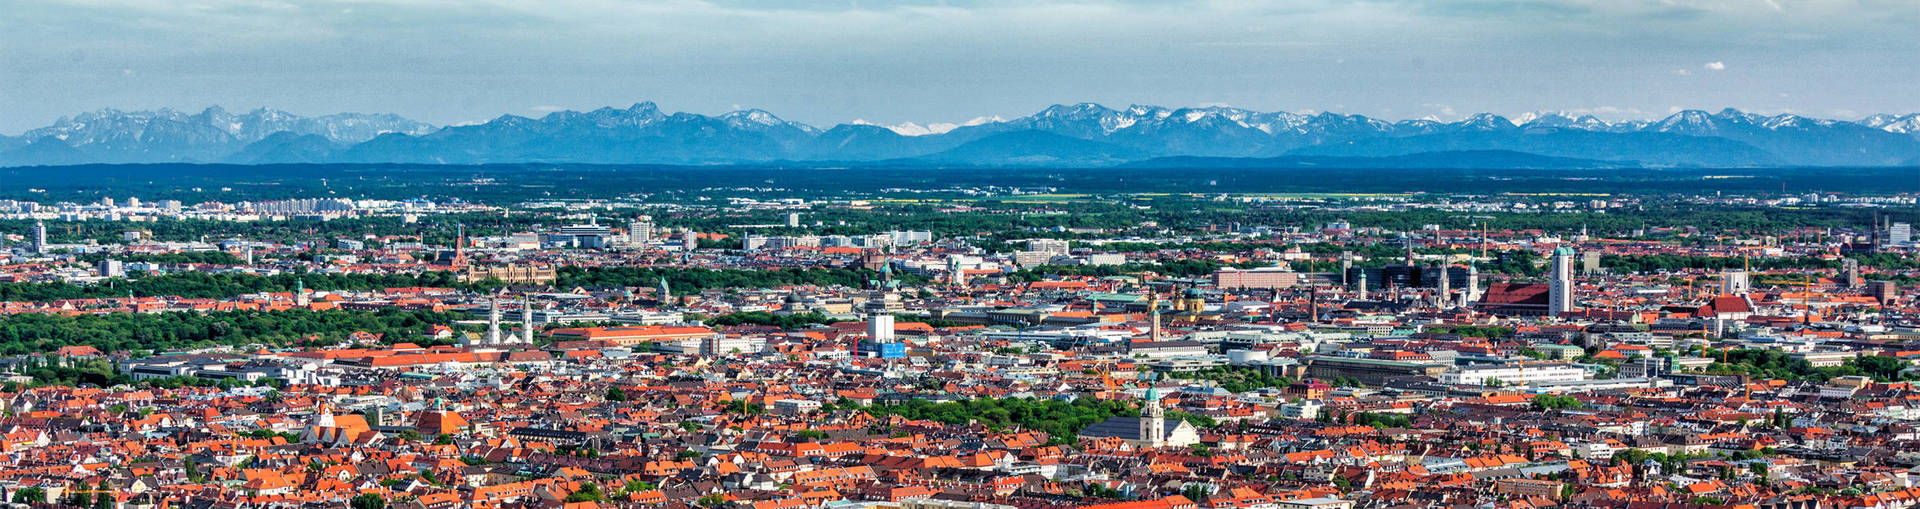 Freie Sicht über München bis zu den Alpen - H4 Hotel München Messe - Offizielle Webseite